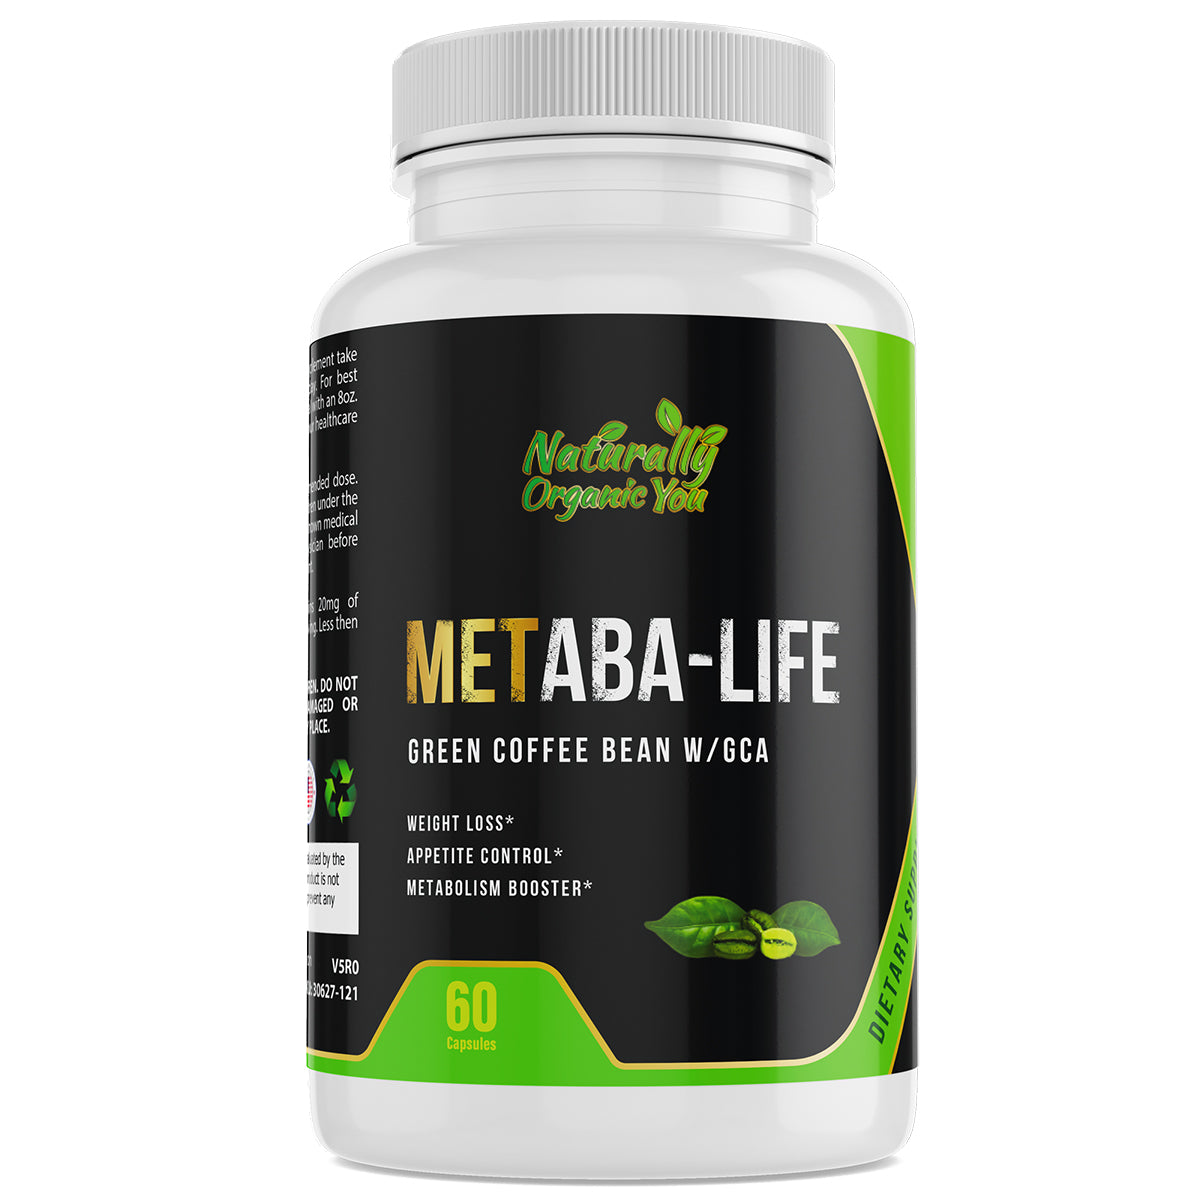 METABA LIFE (Green Coffee Bean w/GCA)